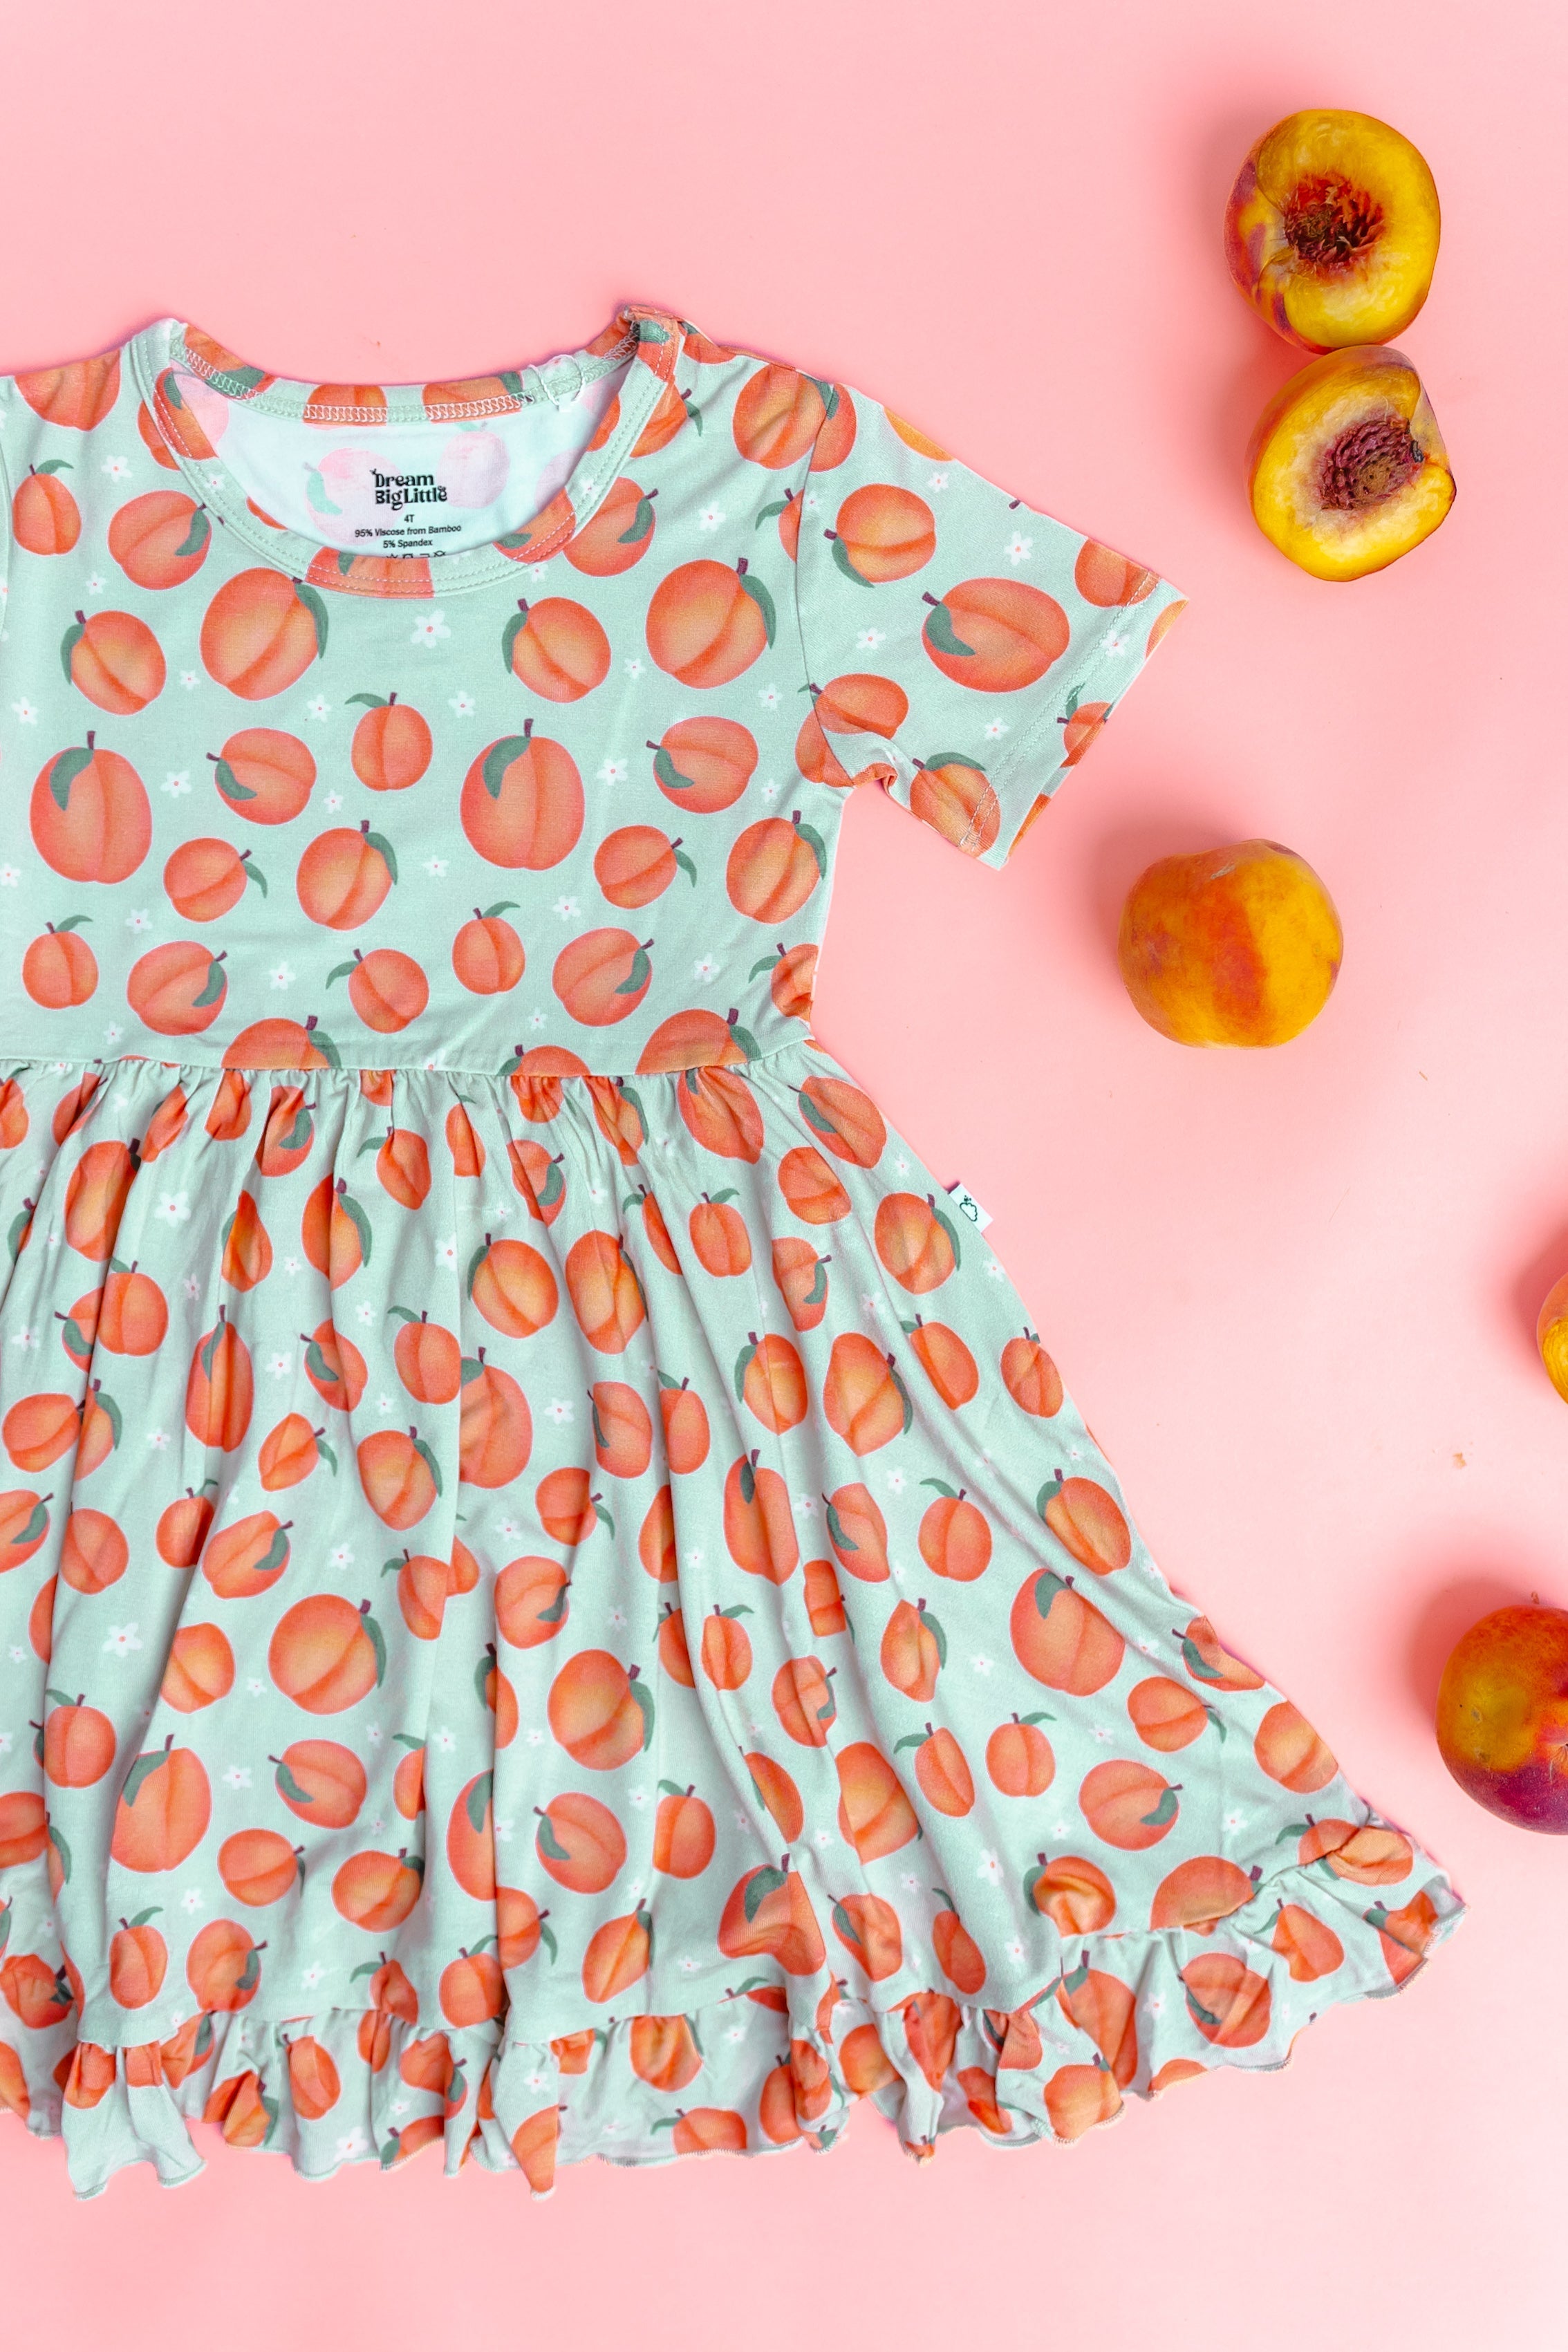 Peachy-keen Dream Ruffle Dress